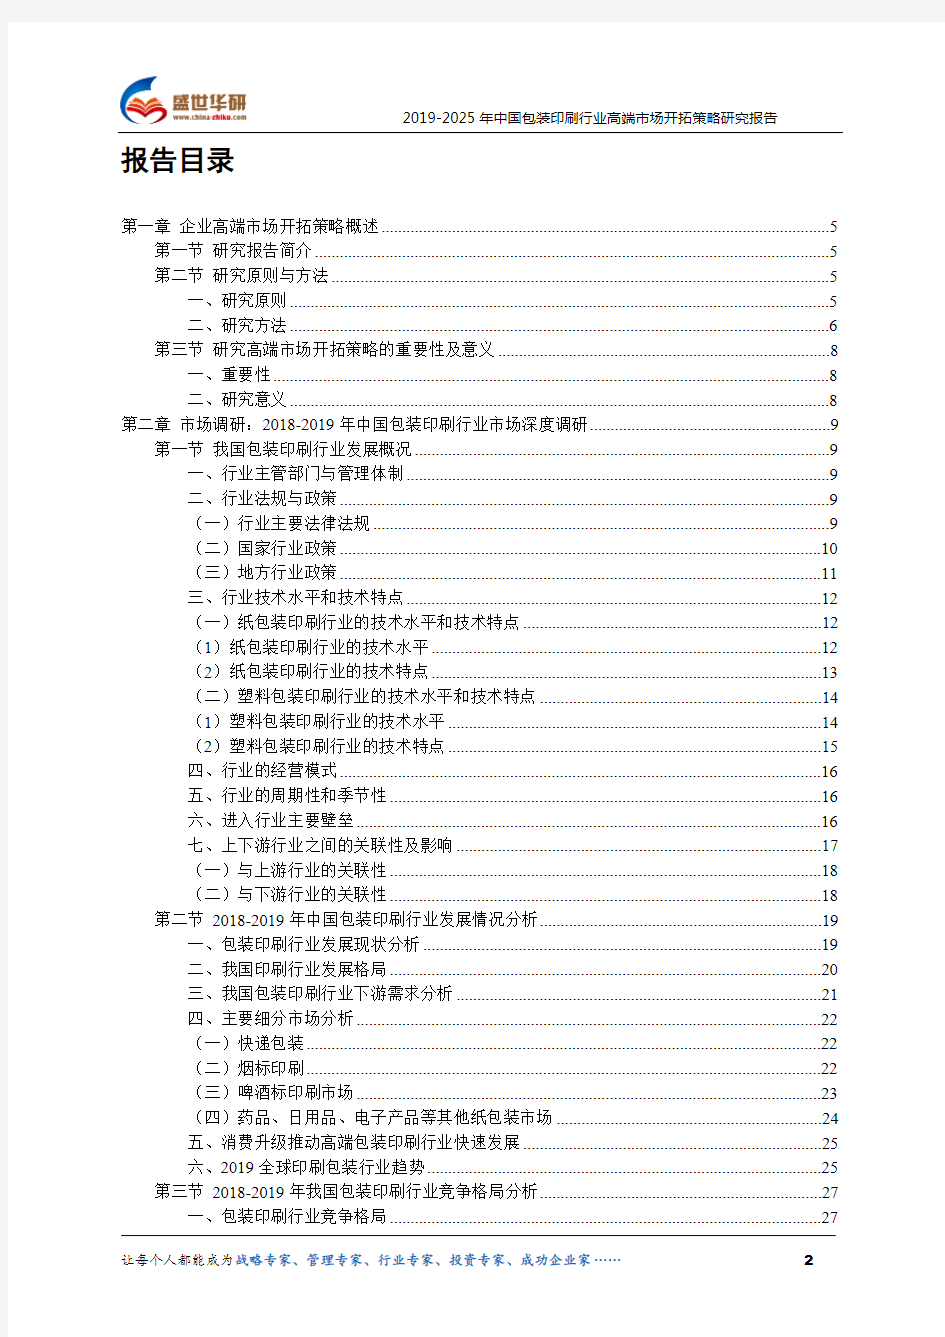 【完整版】2019-2025年中国包装印刷行业高端市场开拓策略研究报告